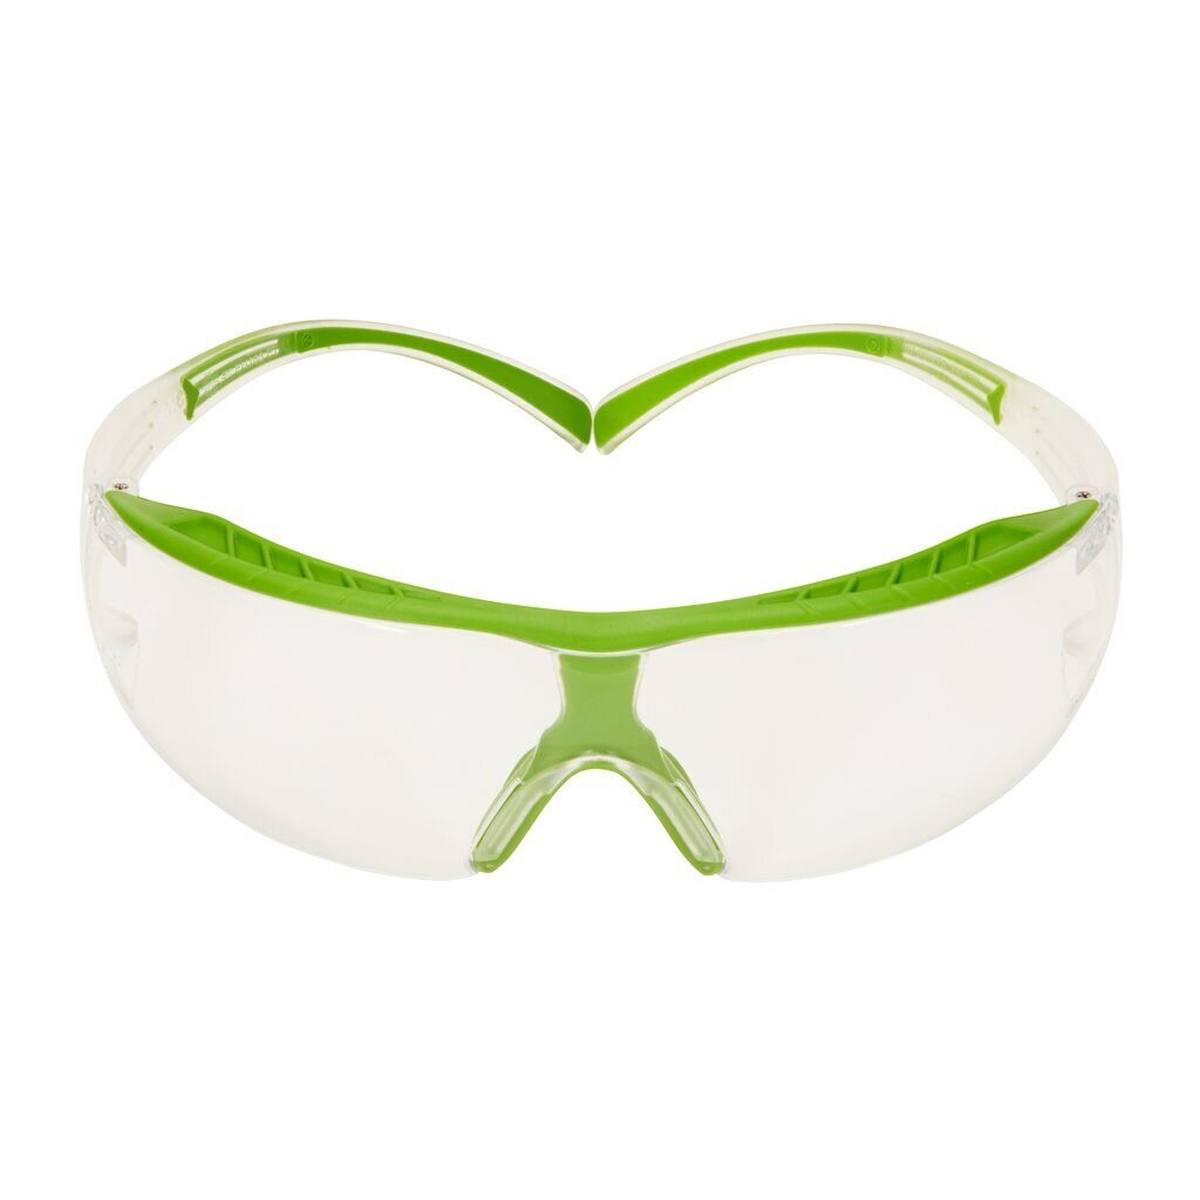 Gafas de protección 3M SecureFit 400X, montura verde-transparente, tratamiento antivaho Scotchgard (K/N), lente transparente, SF401XSGAF-GRN